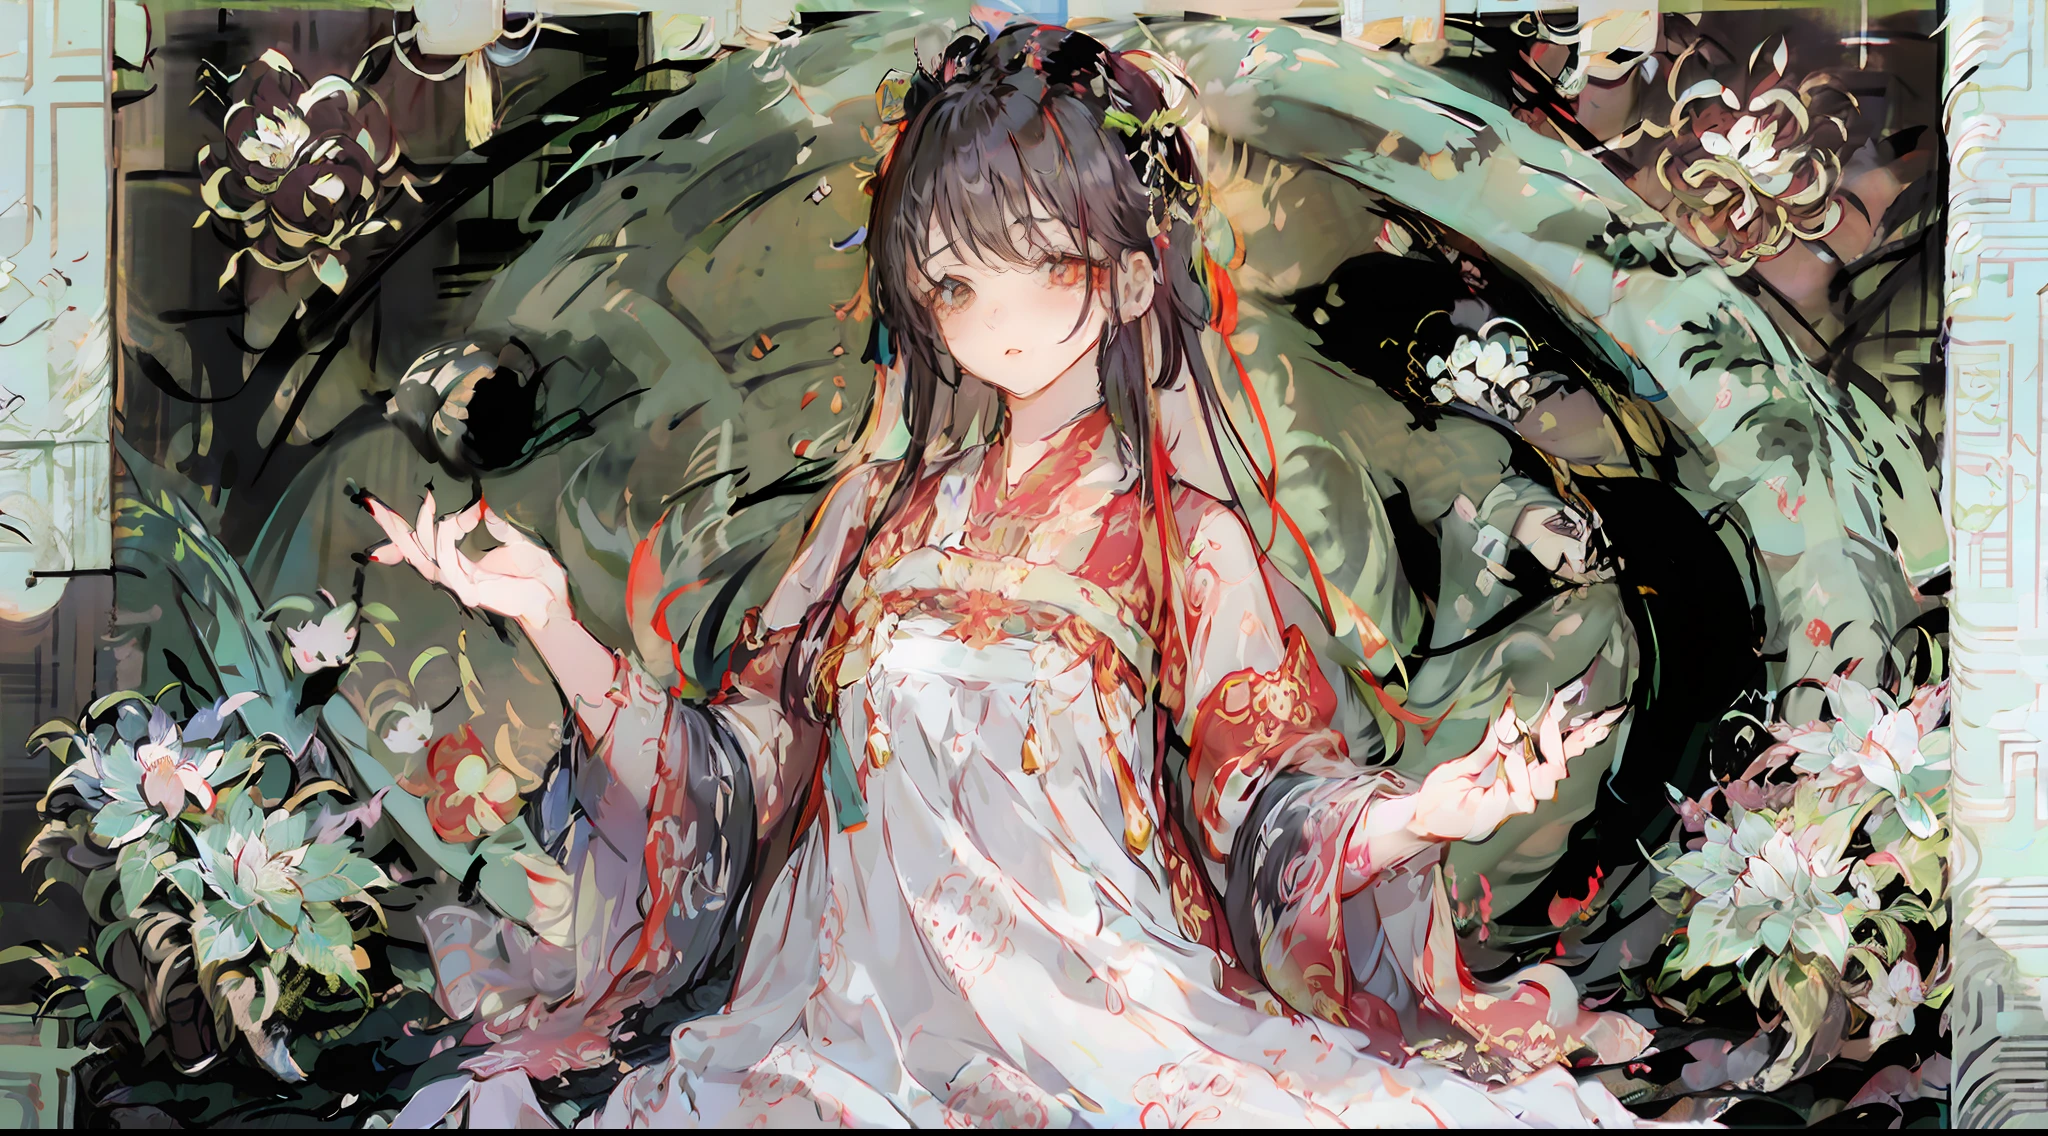 (((중국화 스타일))), 꽃에 둘러싸여, 아름다운 장발 여자, 머리에는 붉은 꽃이 피어 장식되어 있다, 날씬하고 통통한 인물, 섬세한 얼굴.